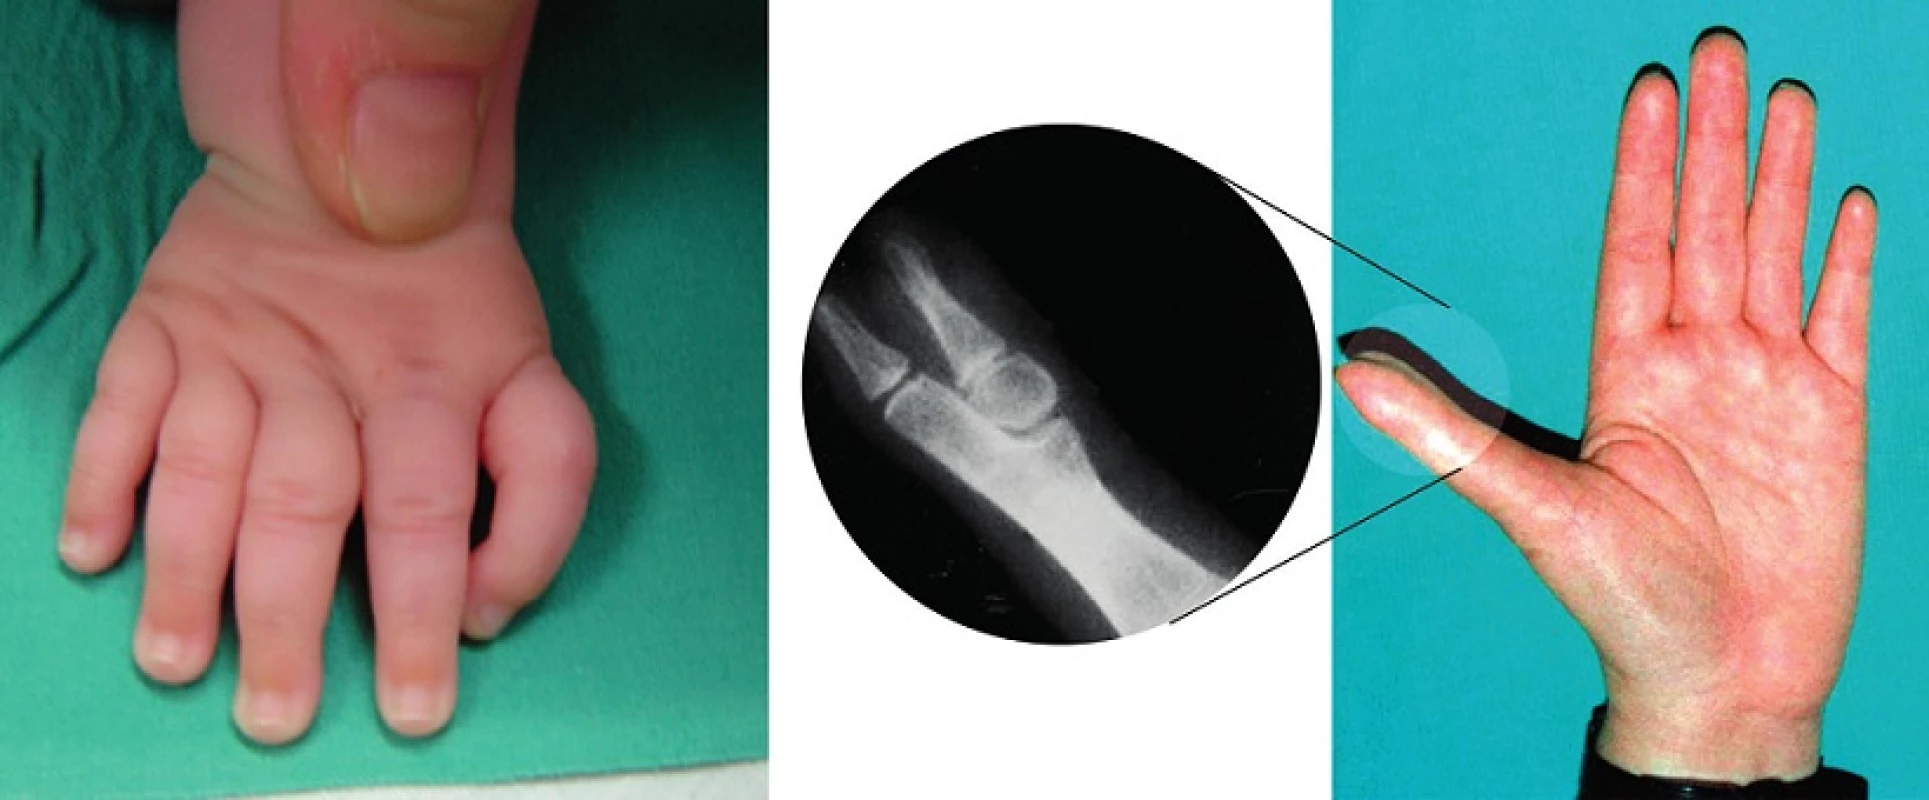 Anomálie typické pro pacienty s Fanconiho anémií a Diamondovou-Blackfanovou anémií: trifalangeální palec, hypoplazie thenarového svalstva.